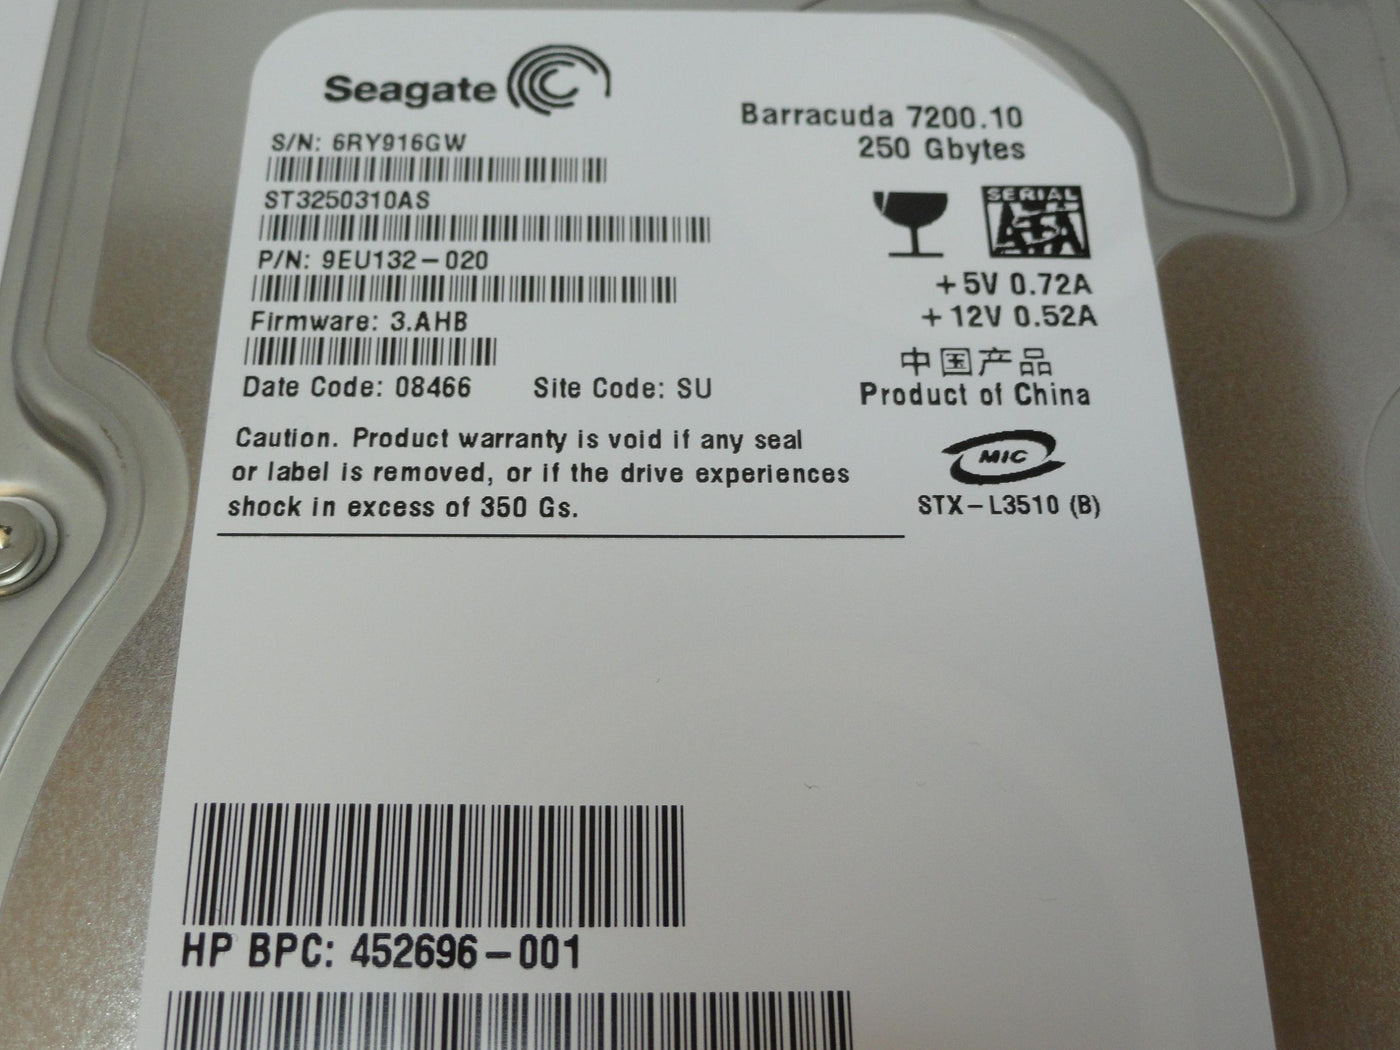 PR20118_9EU132-020_Seagate HP 250Gb SATA 7200rpm 3.5in HDD - Image3